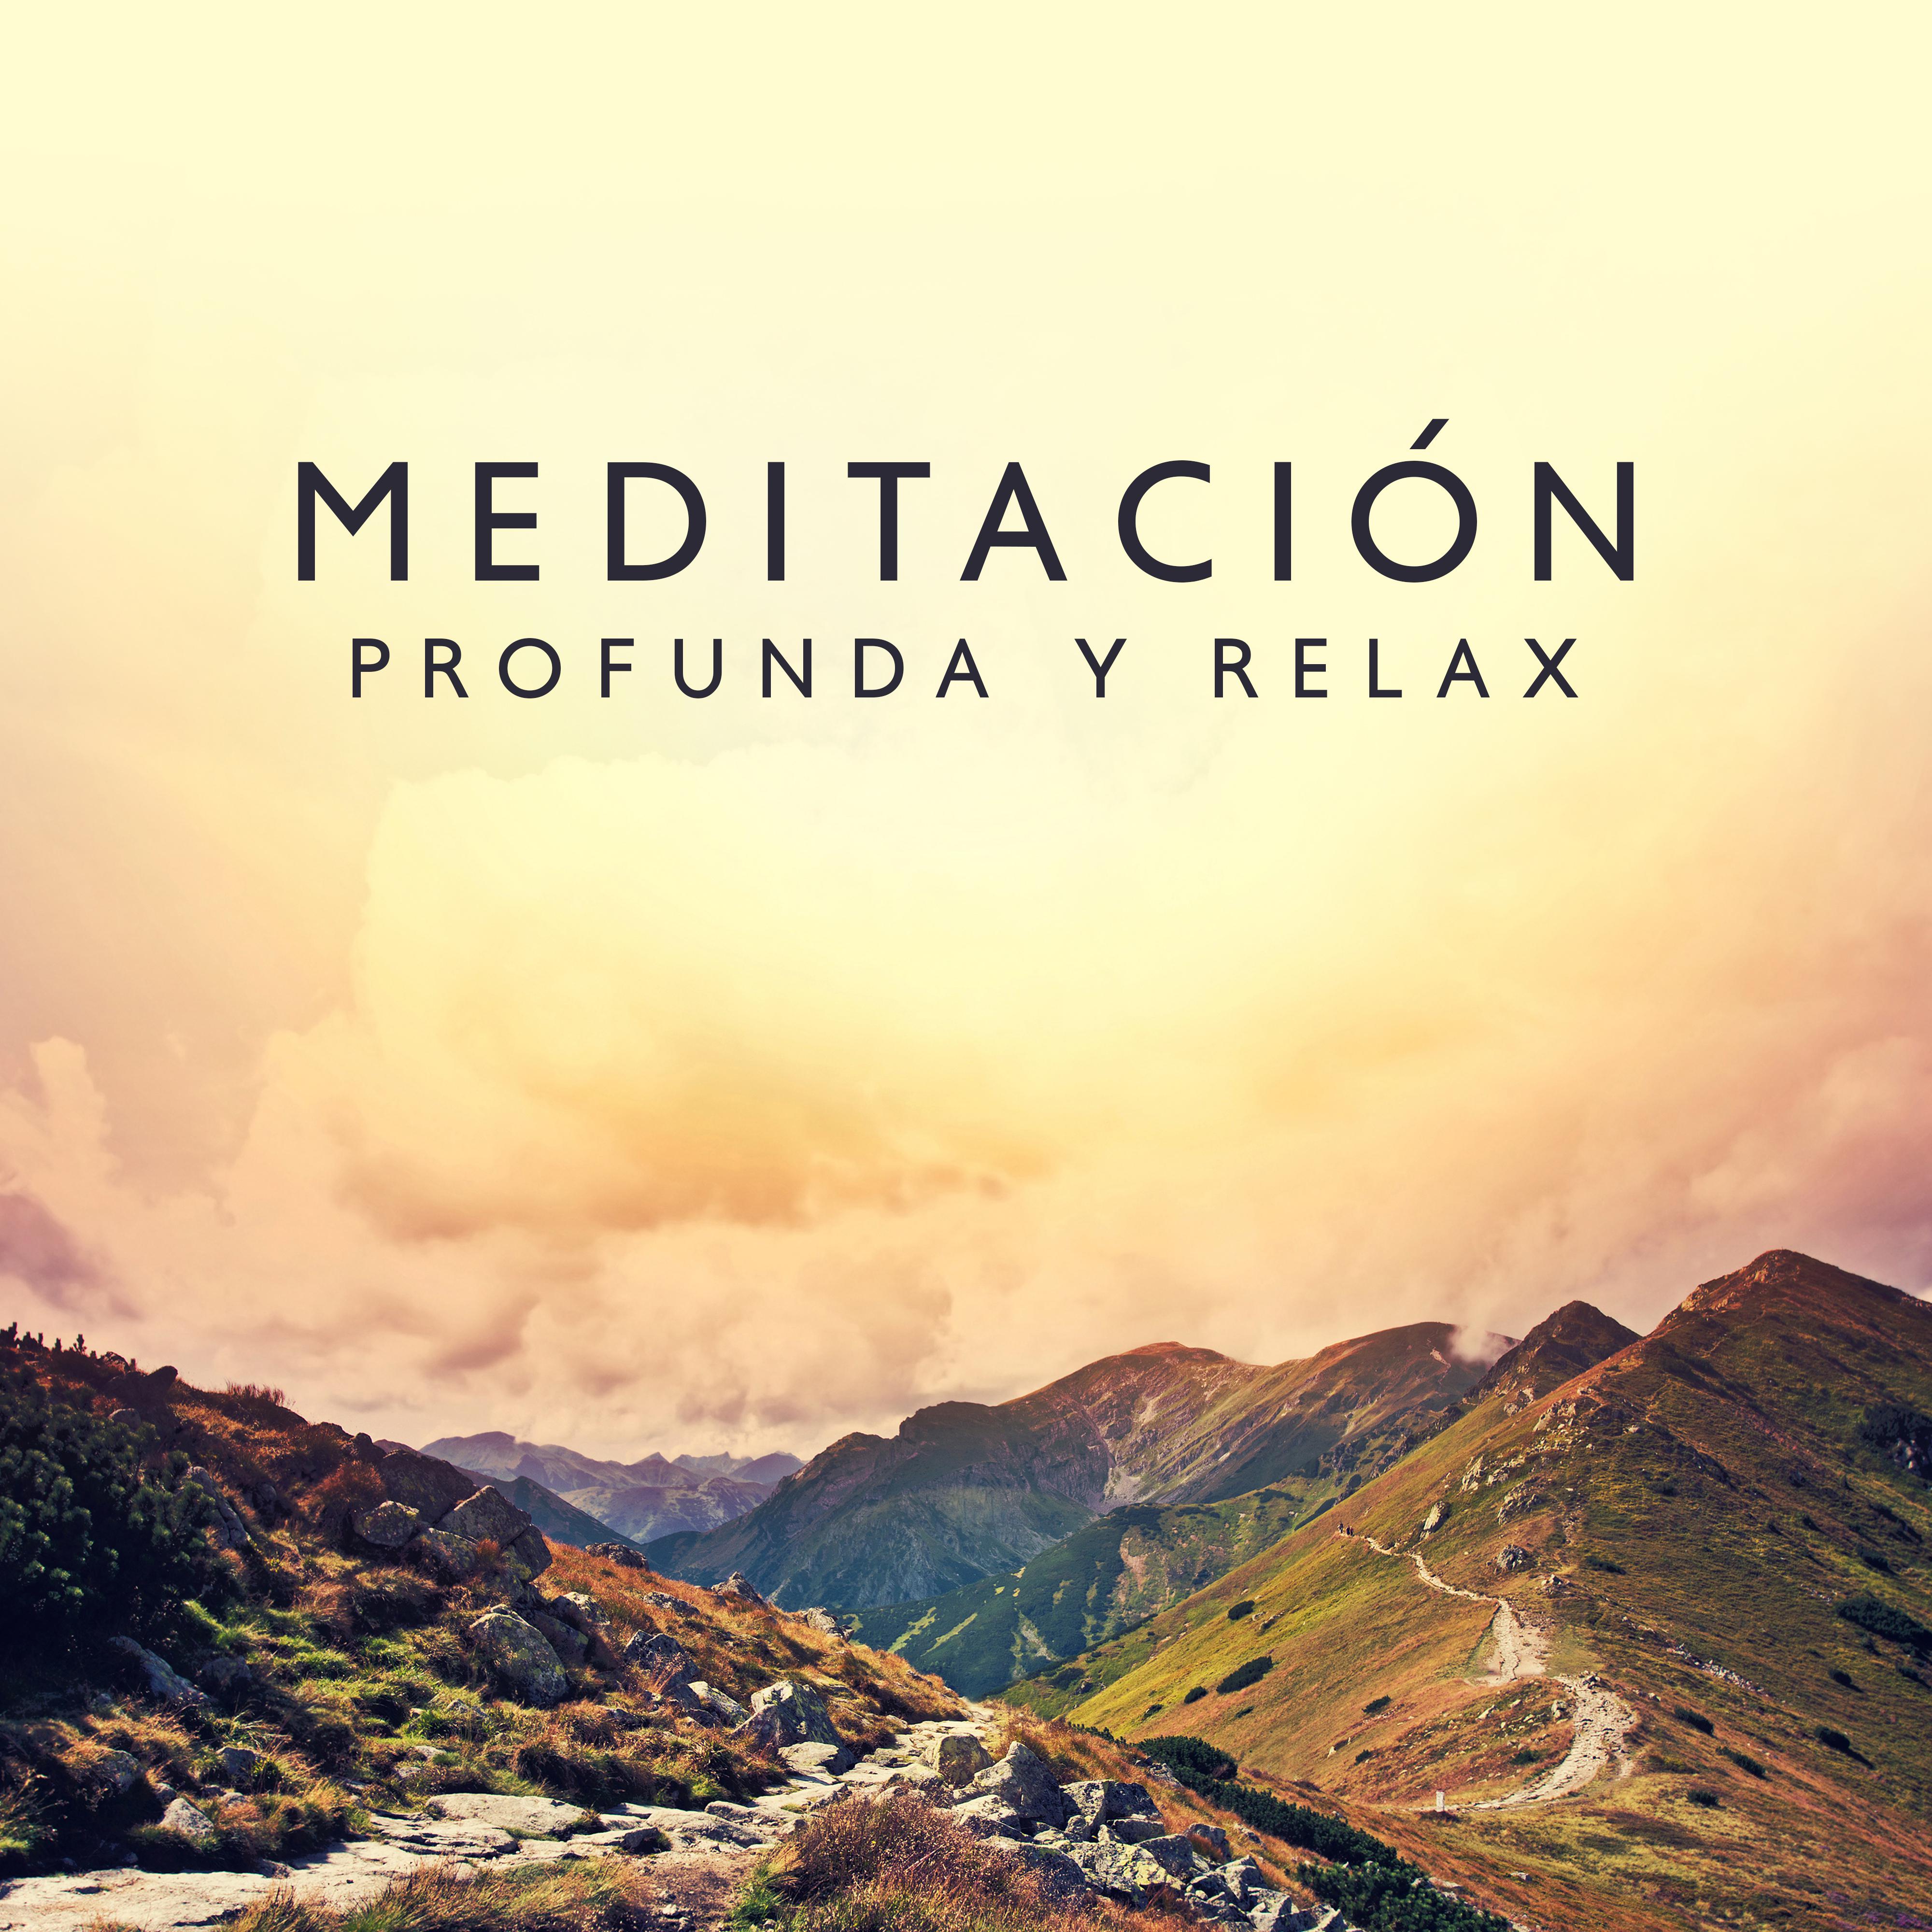 Meditacio n Profunda y Relax  Musica New Age para Dormir, Yoga, Relajacio n, Calma, Armoni a, Paz Interior, Meditar, Mente Pura